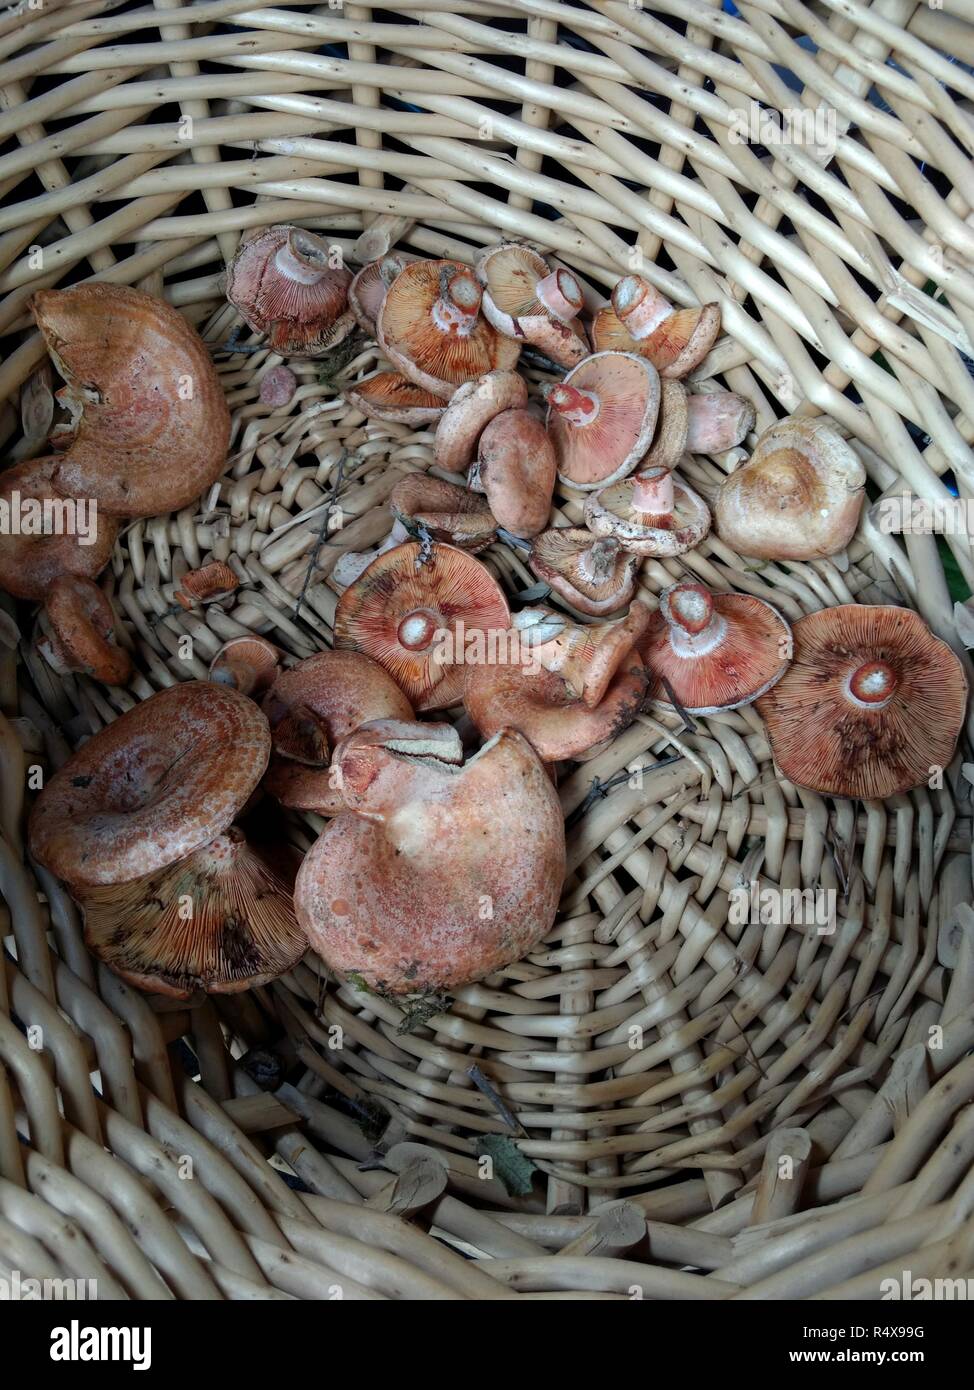 Some saffron milk cap mushrooms (Lactarius deliciosus), very similar to Lactarius sanguifluus and Lactarius deterrimus, in a wicker basket Stock Photo